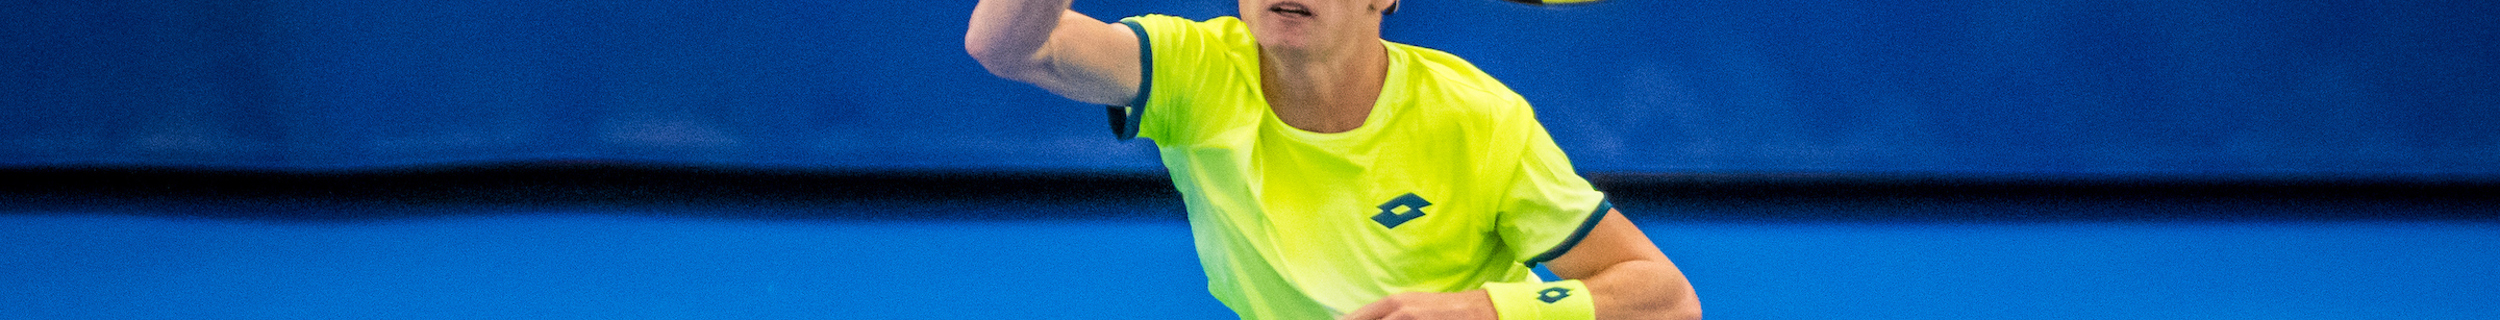 NK Tennis Jesper forehand